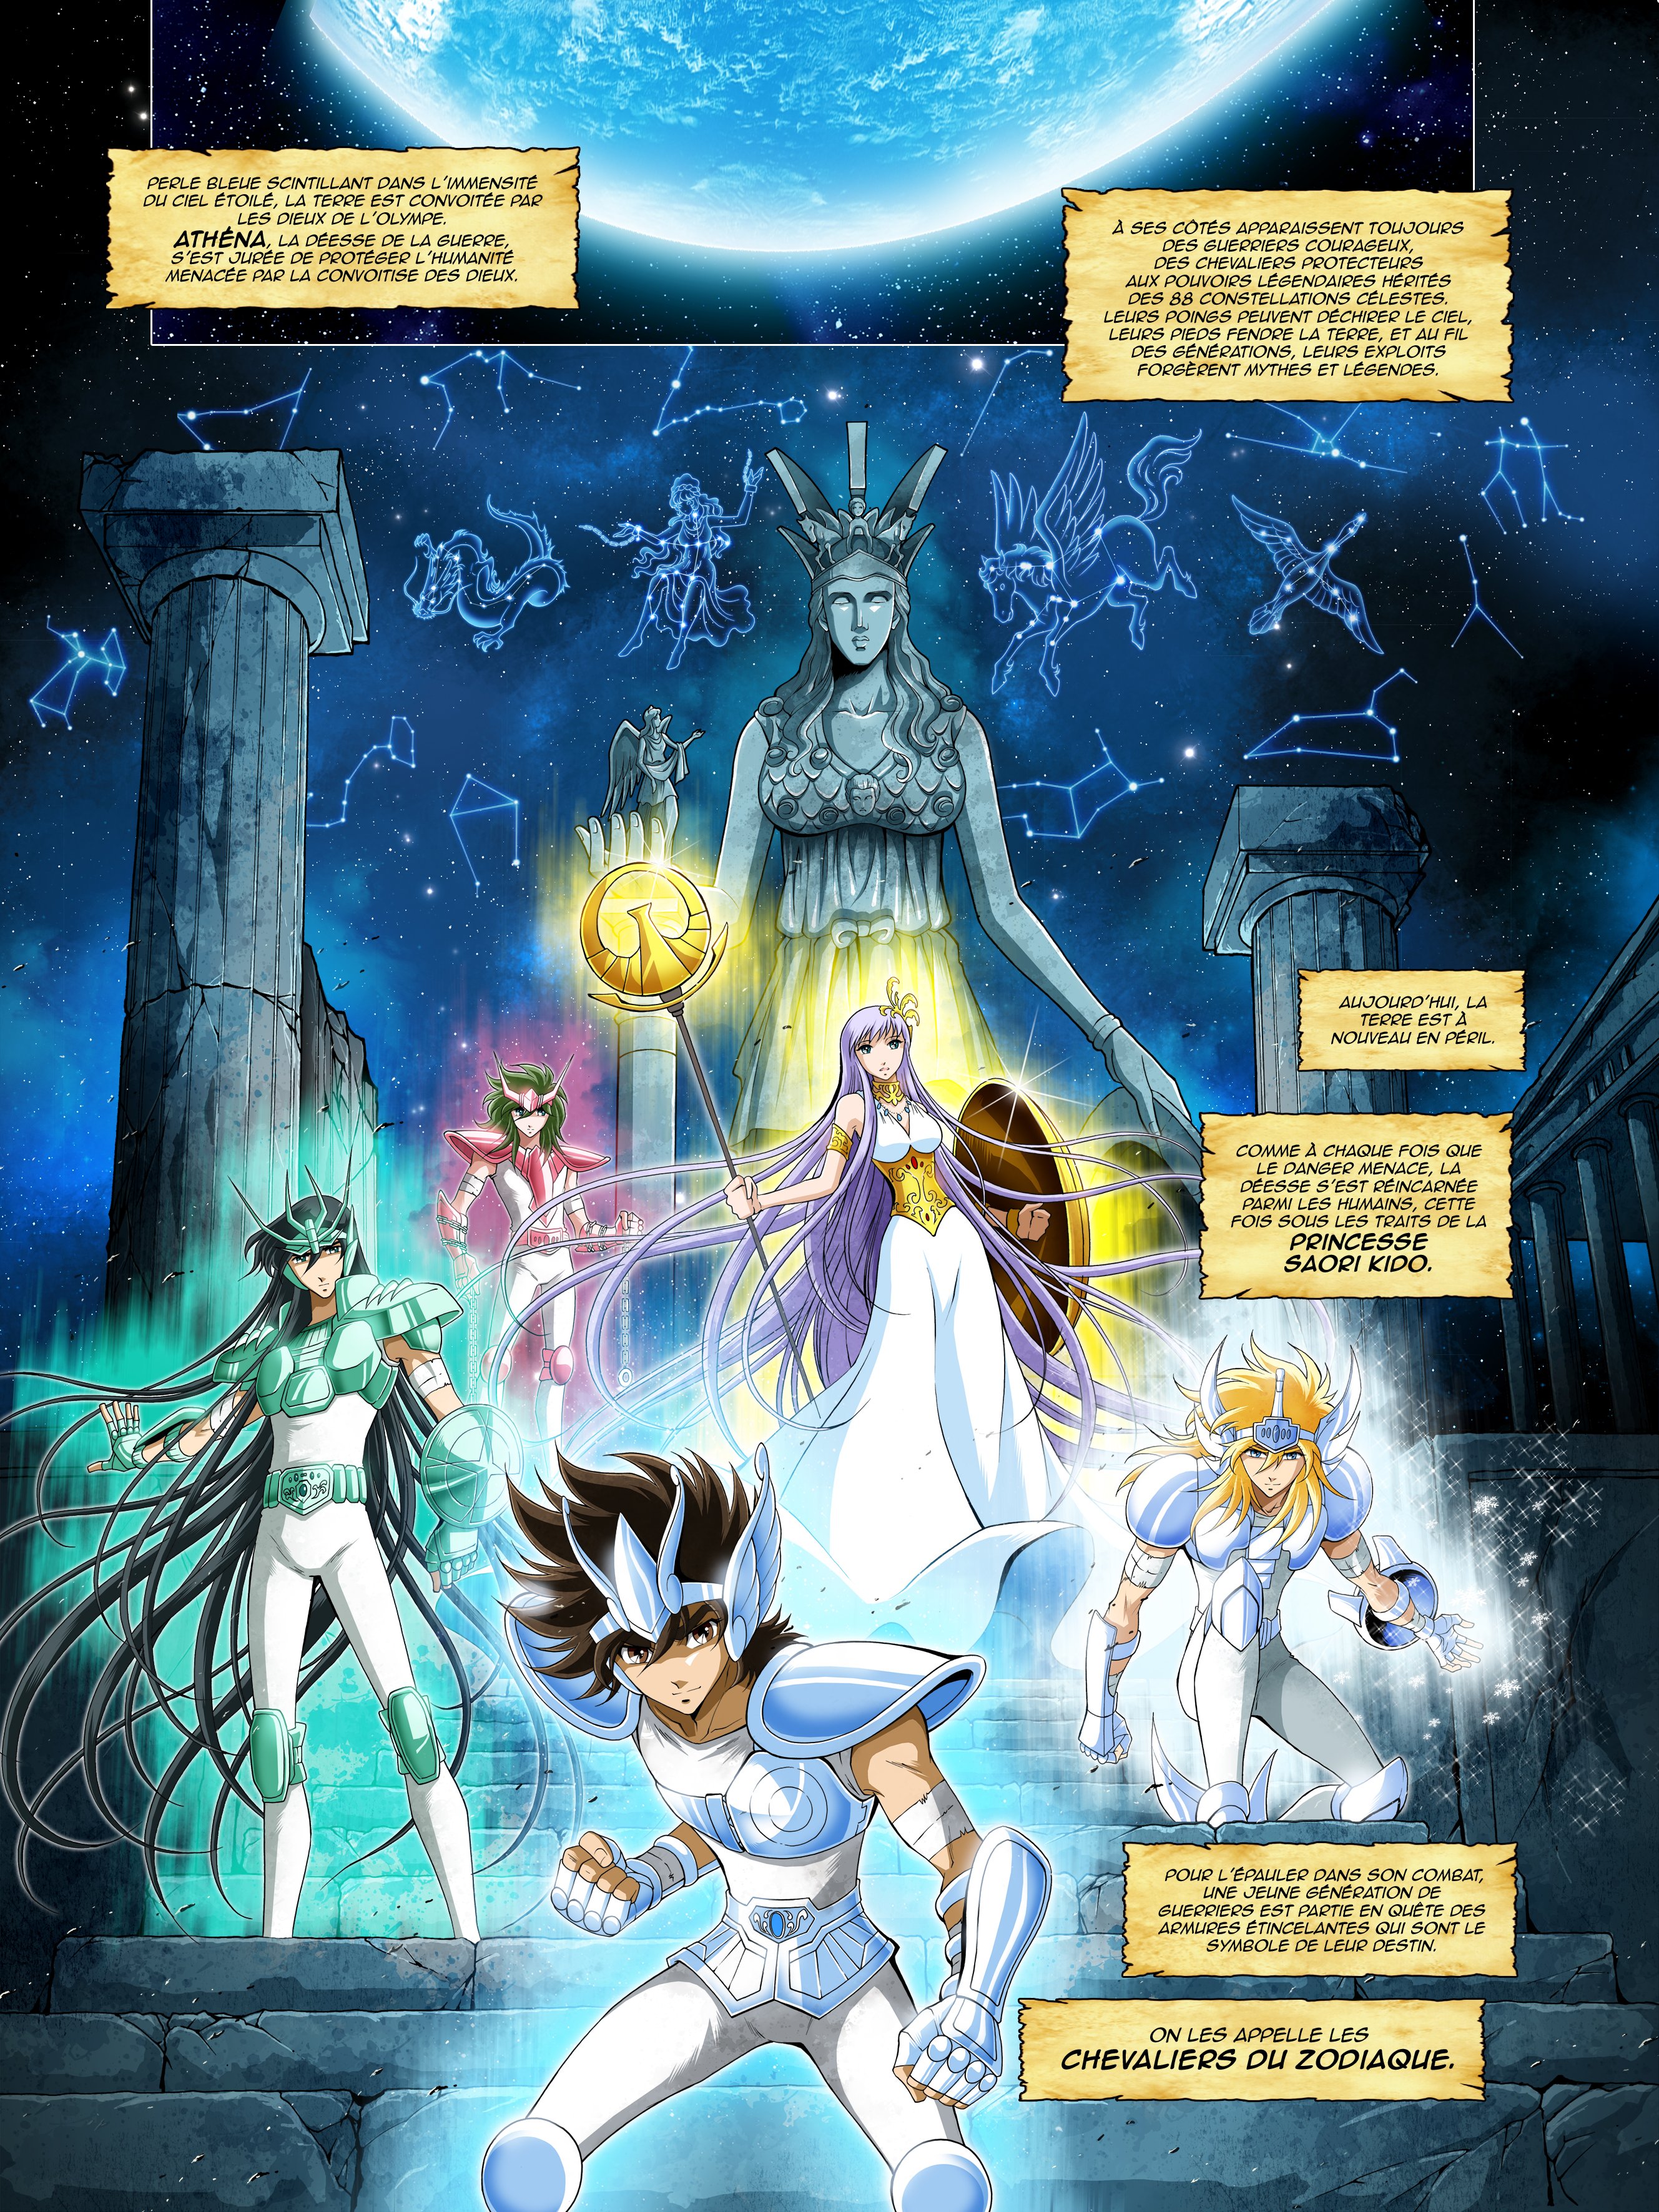 Time Odyssey: veja mais algumas páginas do volume 2 da HQ oficial dos  Cavaleiros do Zodíaco! - Os Cavaleiros do Zodíaco - CavZodiaco.com.br